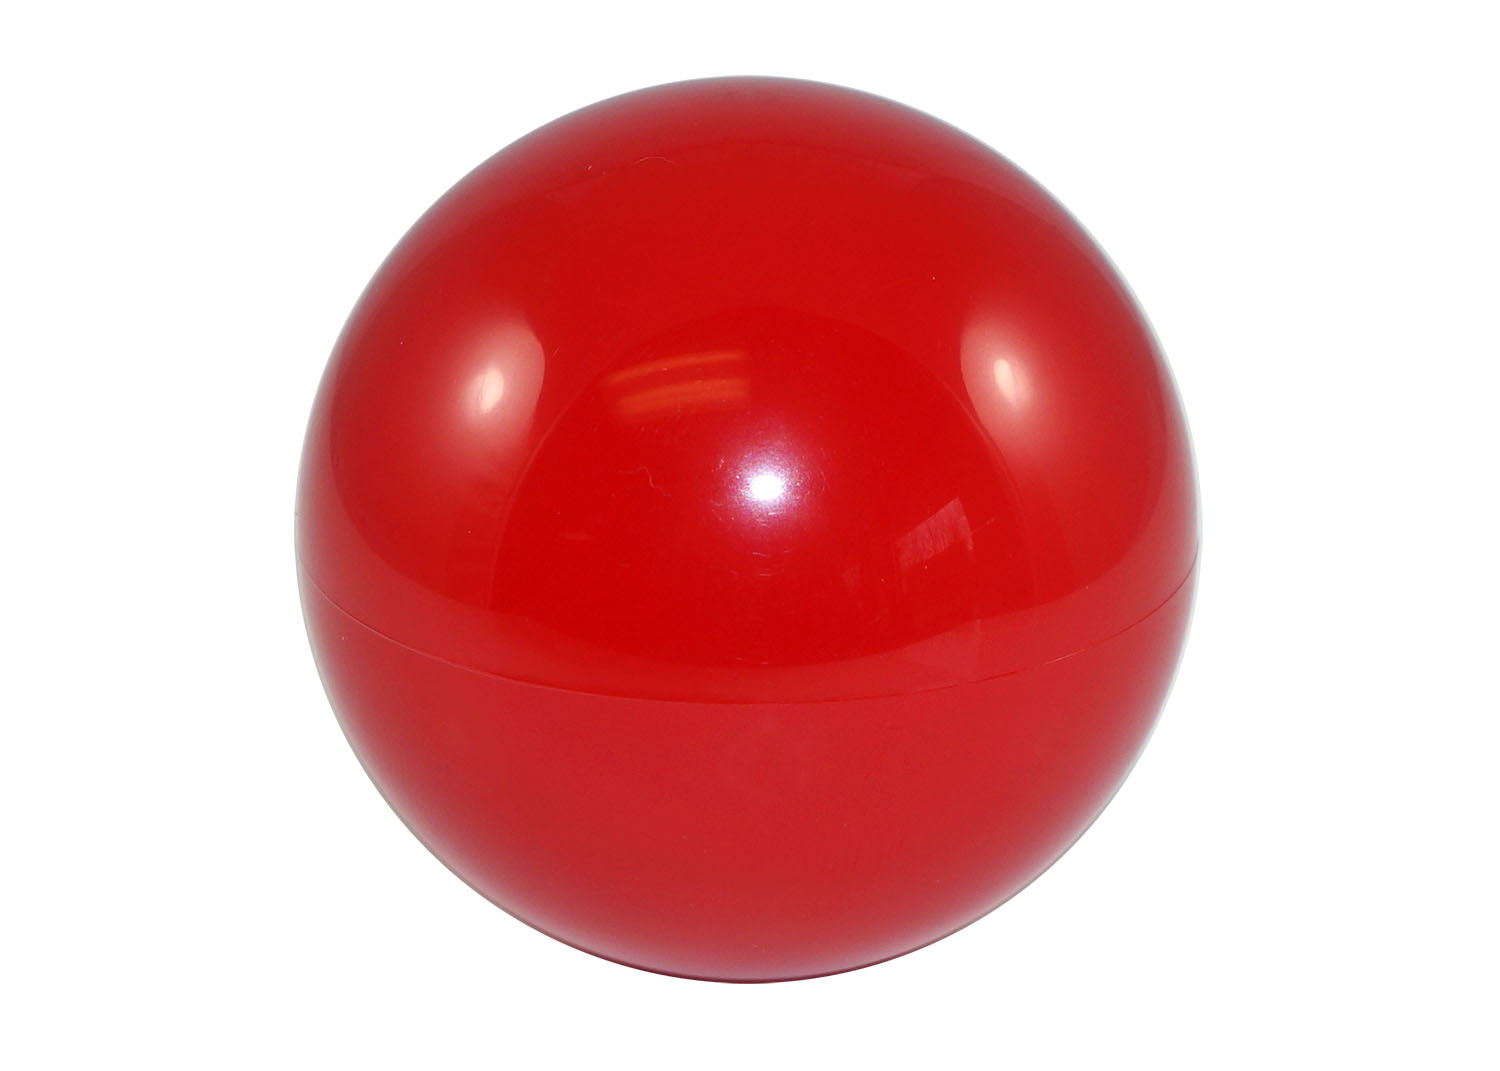 Красный шар